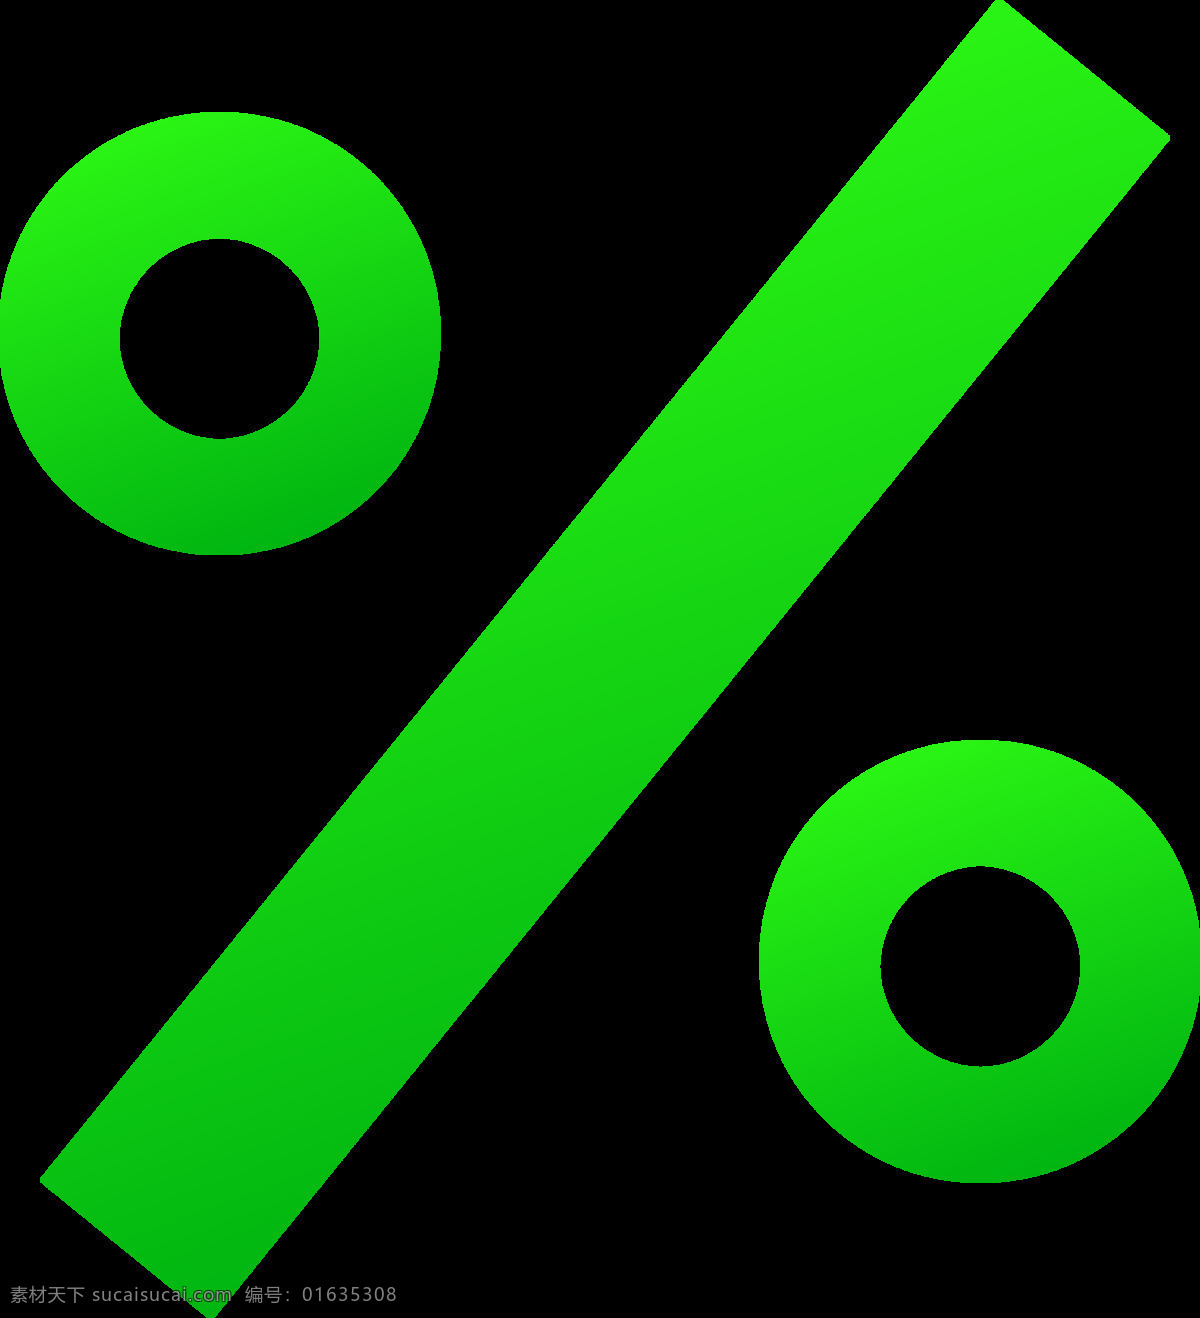 绿色 百分比 符号 免 抠 透明 图 层 数字符号 数学符号 百分符号 创意 符号素材